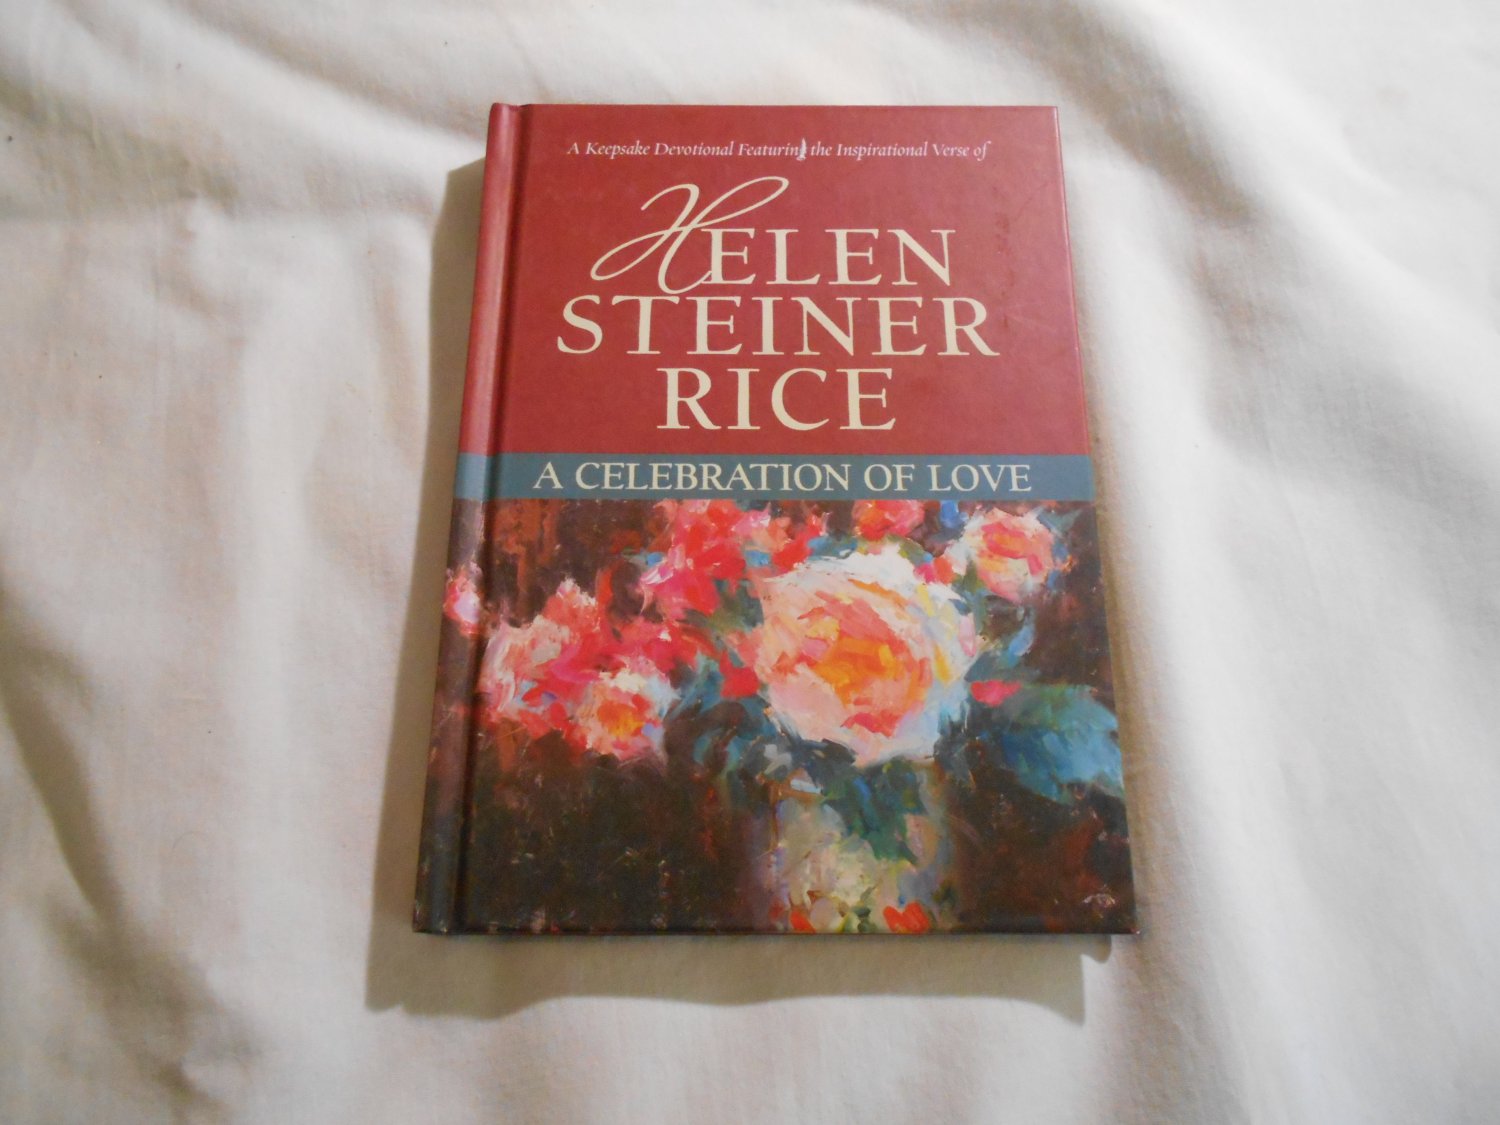 A Celebration of Love by Helen Steiner Rice (2010) (85) Keepsake Devotional